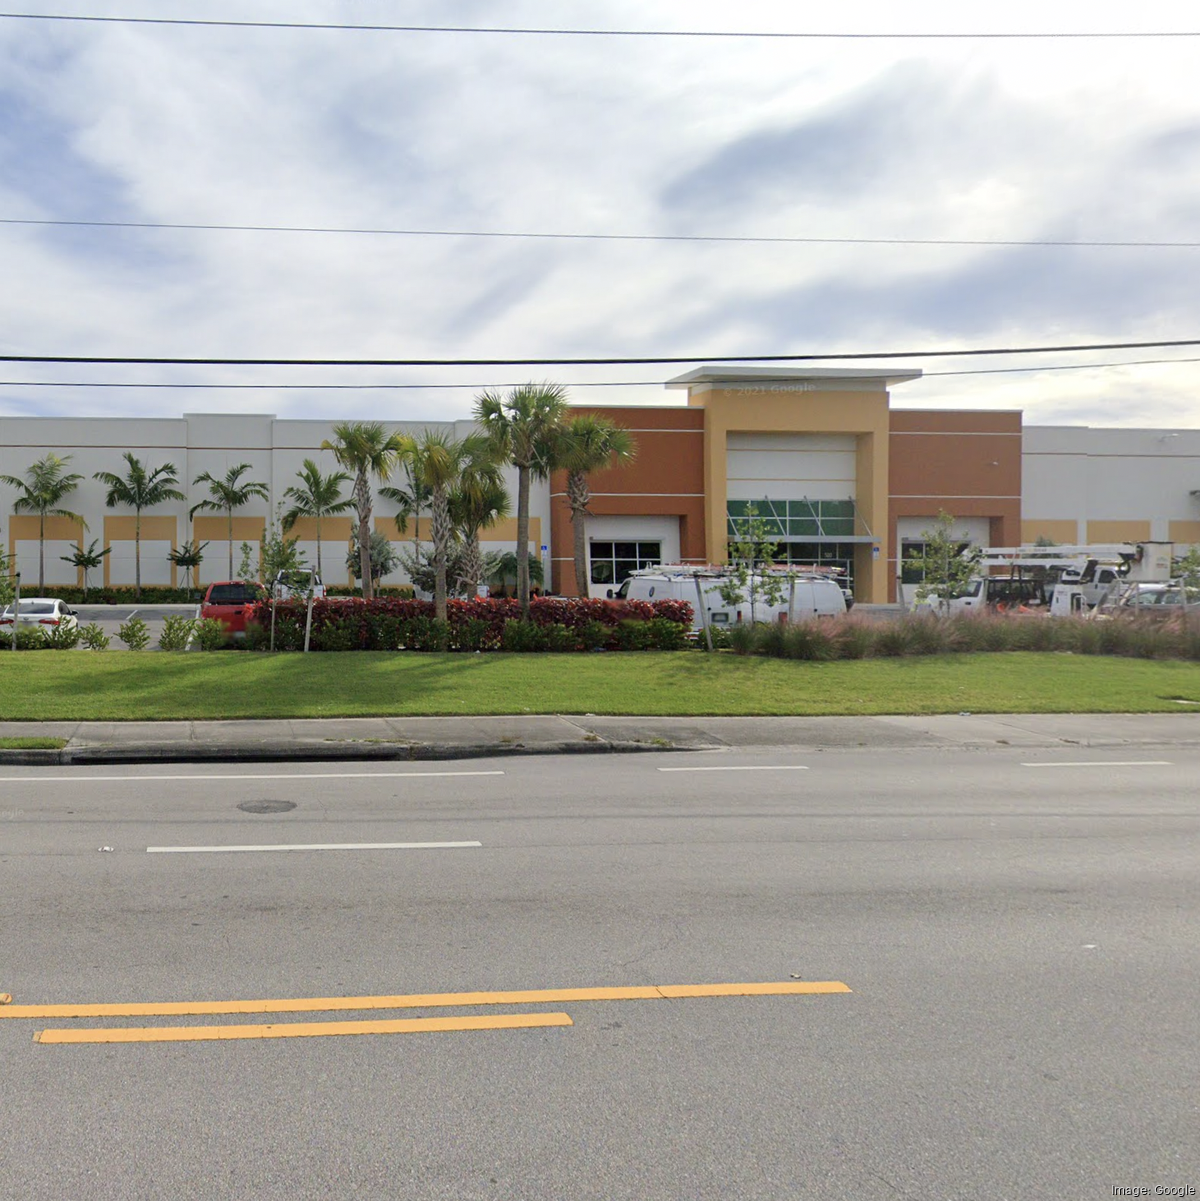 Body found in Walmart parking lot in West Palm Beach